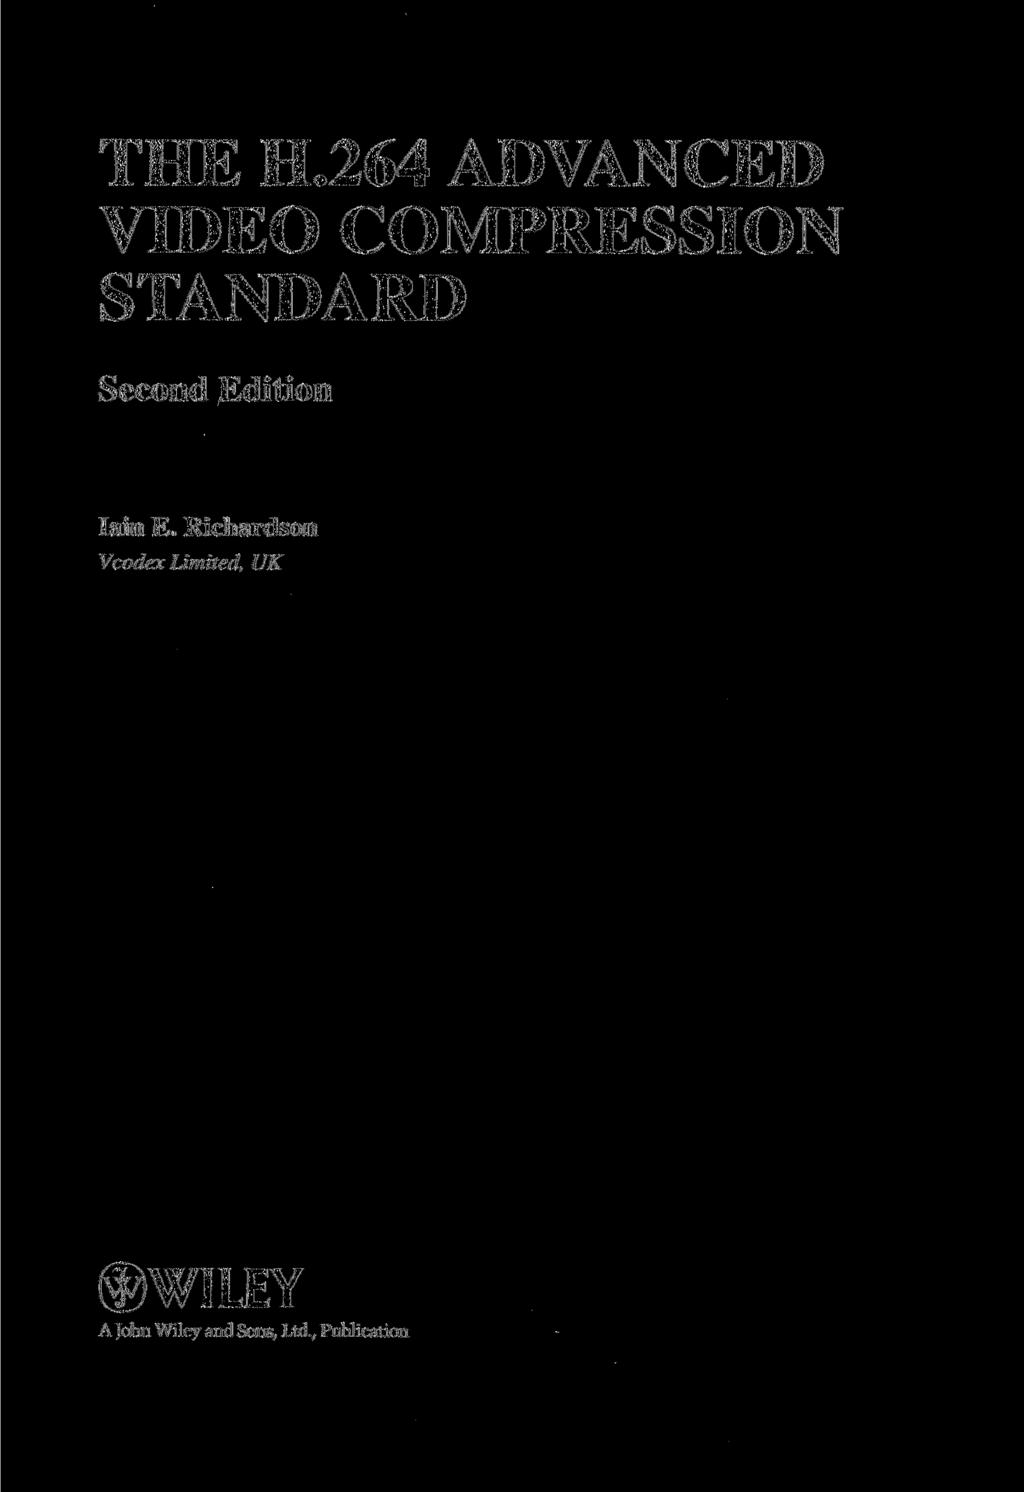 THE H.264 ADVANCED VIDEO COMPRESSION STANDARD Second Edition Iain E.